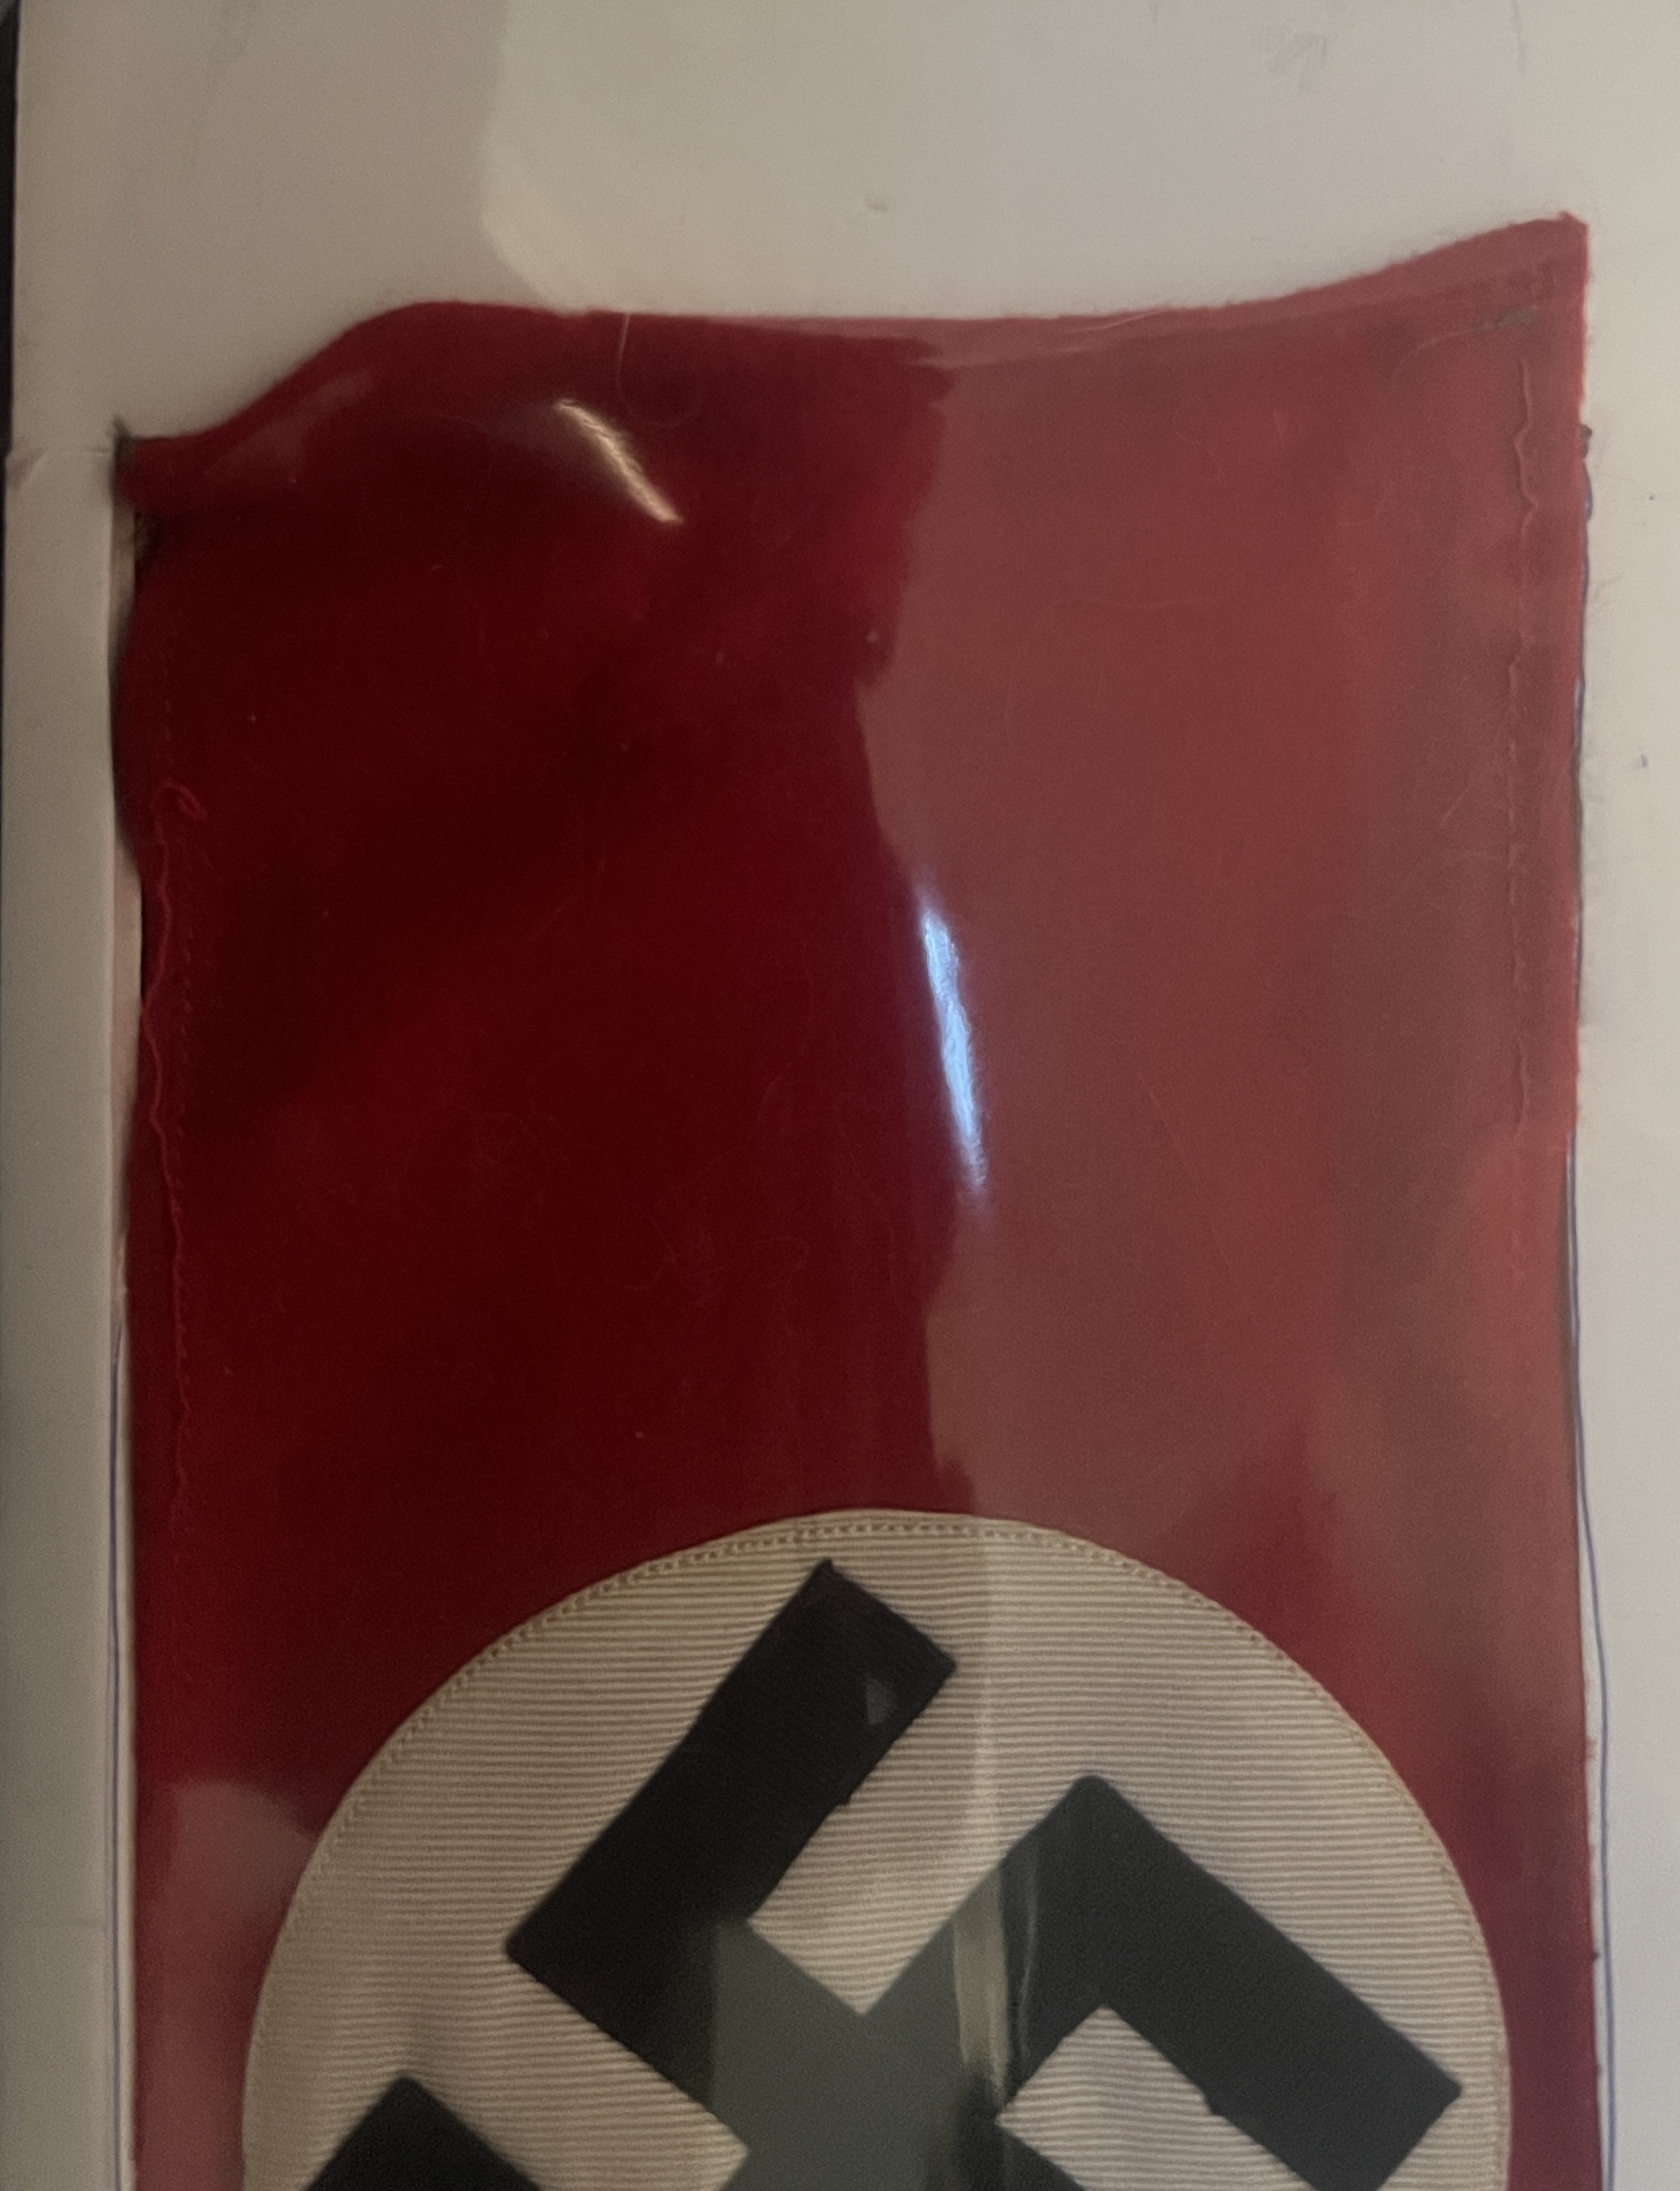 black swastika, white circle, red band